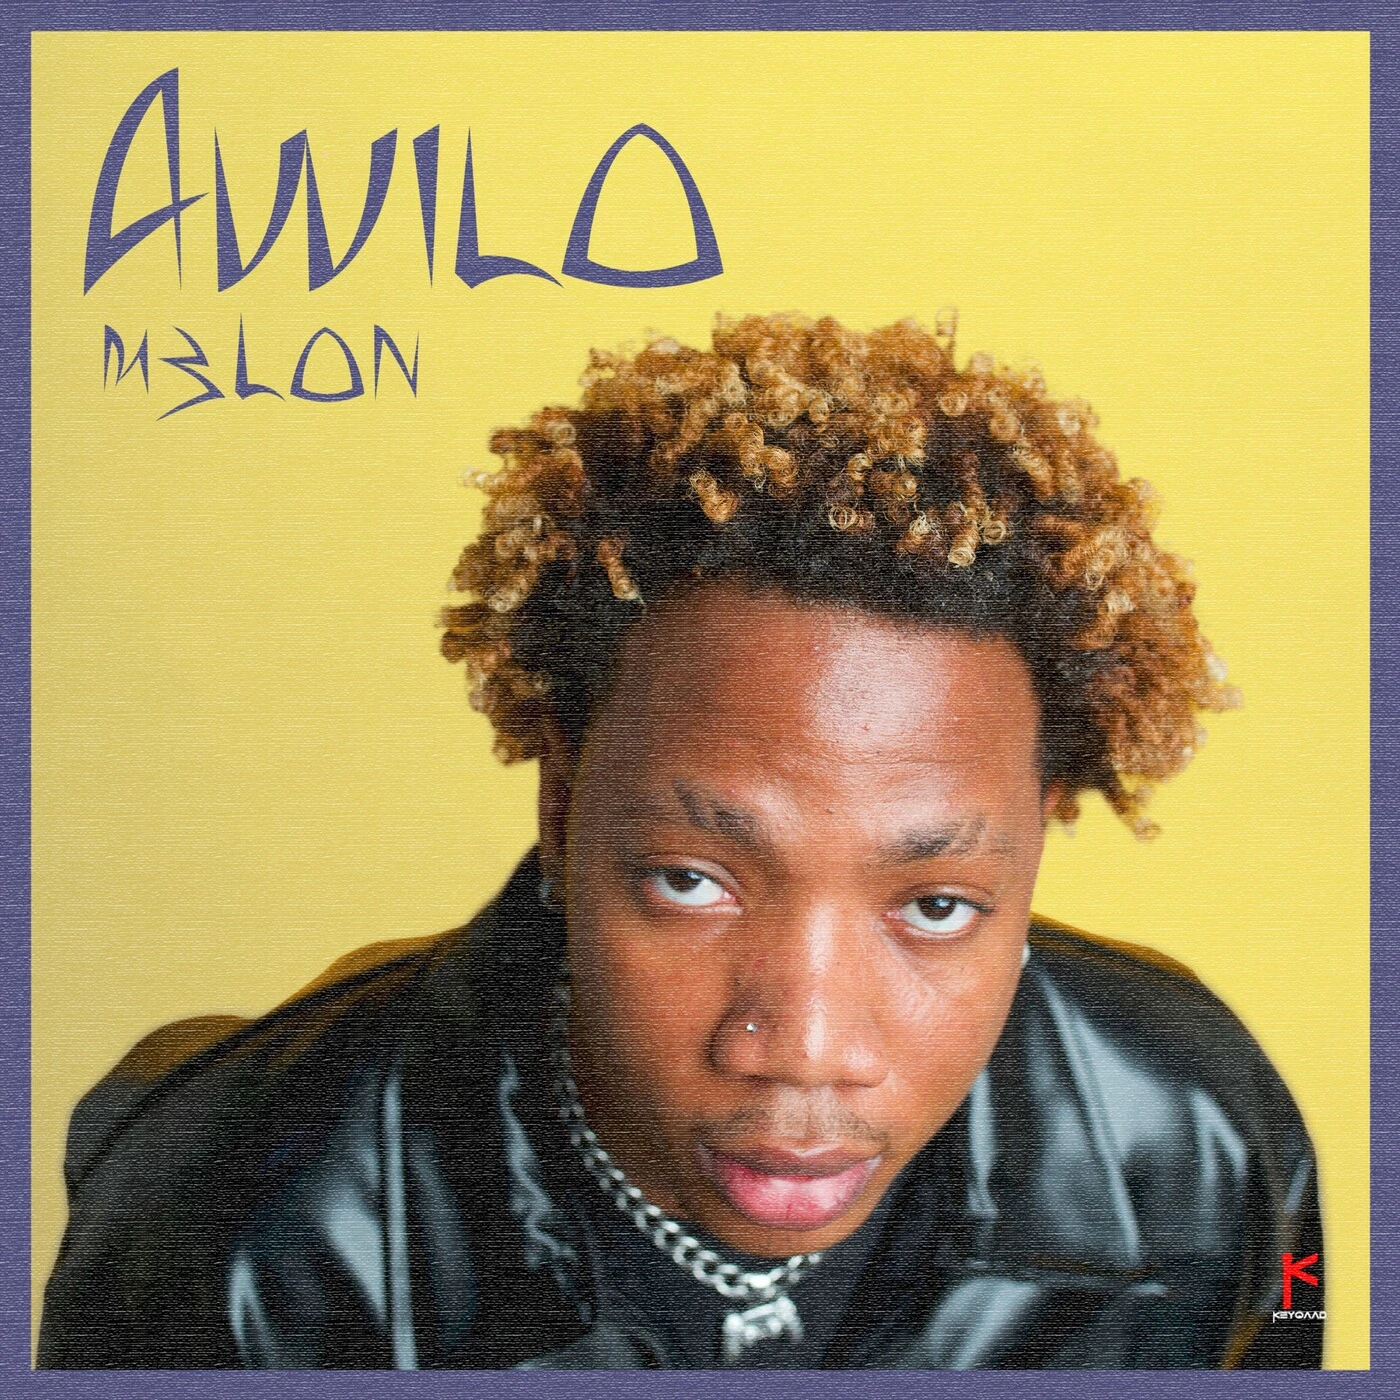 M3lon – Awilo mp3 download